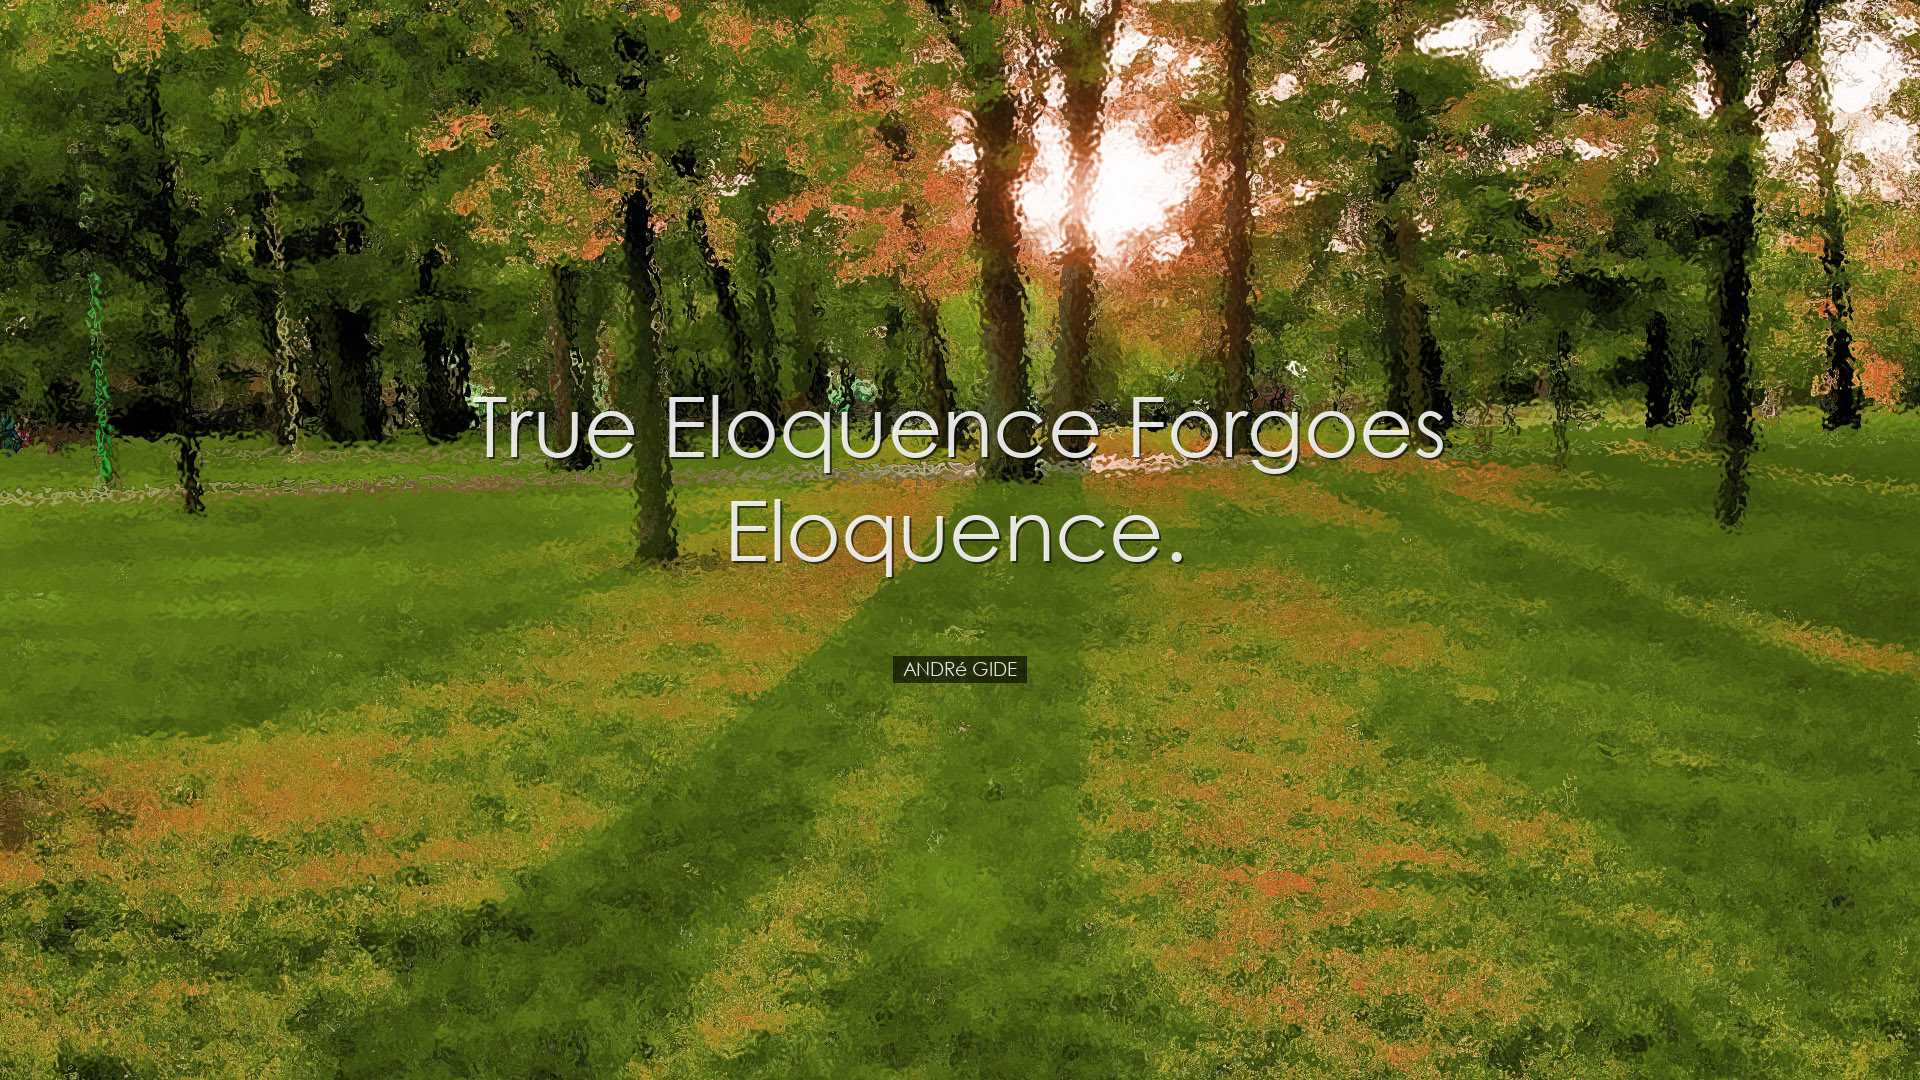 True eloquence forgoes eloquence. - AndrÃ© Gide